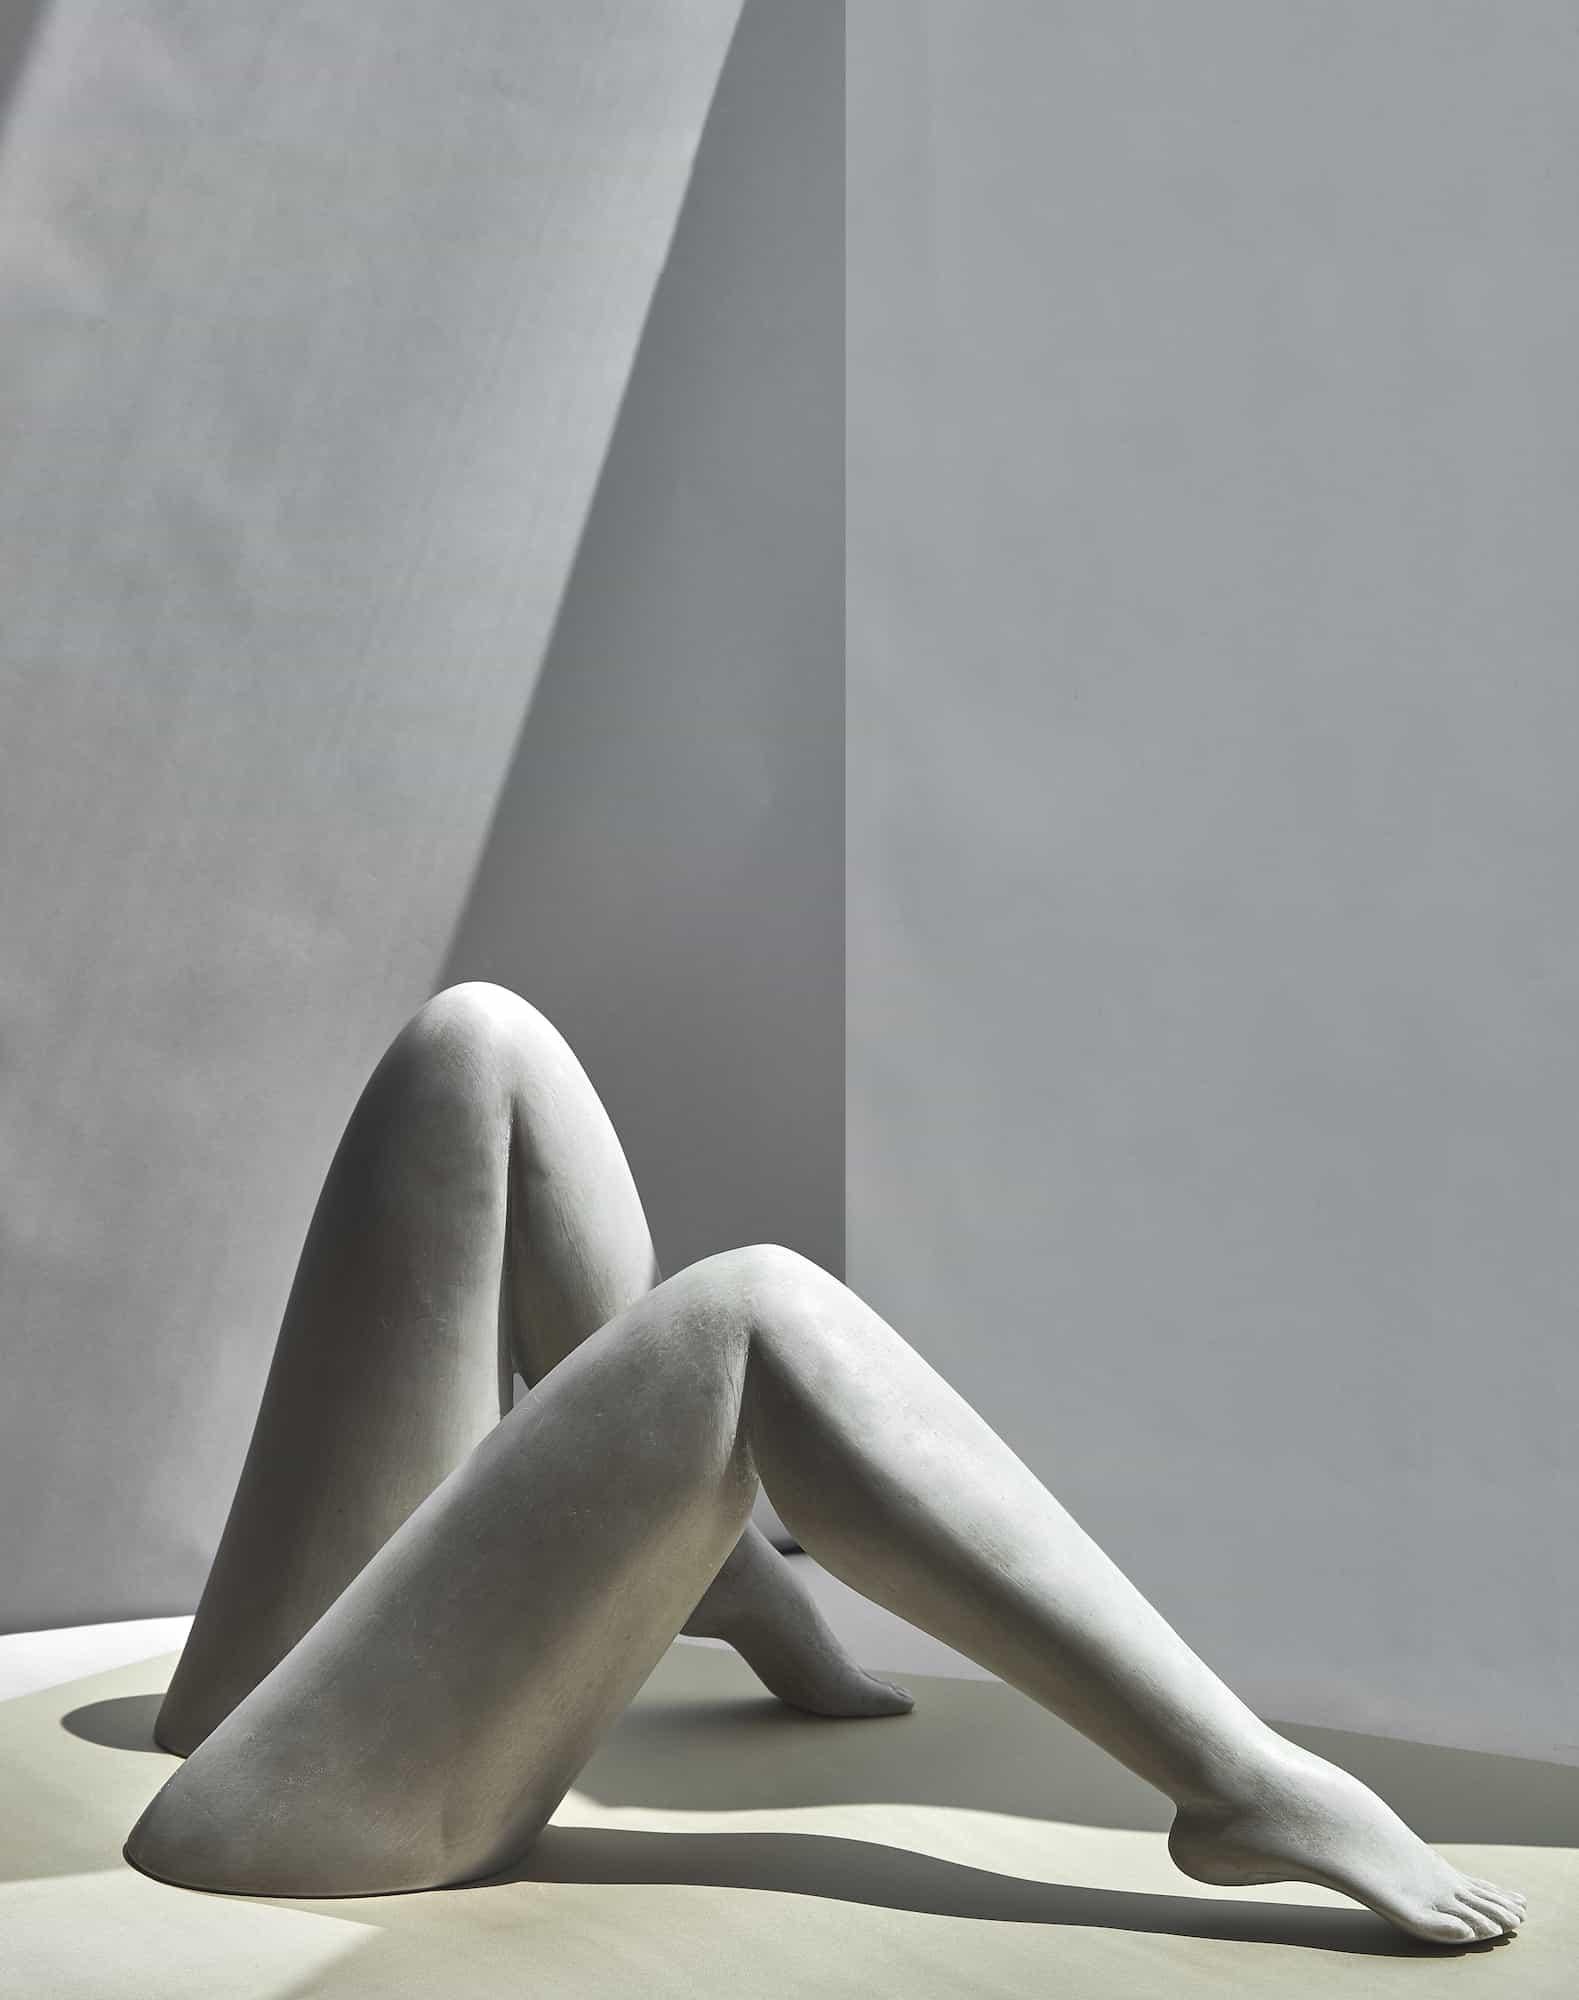 Le Gambe-Skulptur von Marcela Cure
Abmessungen: Bein 1 B 47 x T 12 x H 22 cm / Bein 2 B 29 x T 12 x H 29 cm
MATERIALIEN: Harz und Stein Verbundwerkstoff

Unsere Le Gambe-Skulptur besteht aus zwei einzelnen Beinen, die auf unterschiedliche Weise